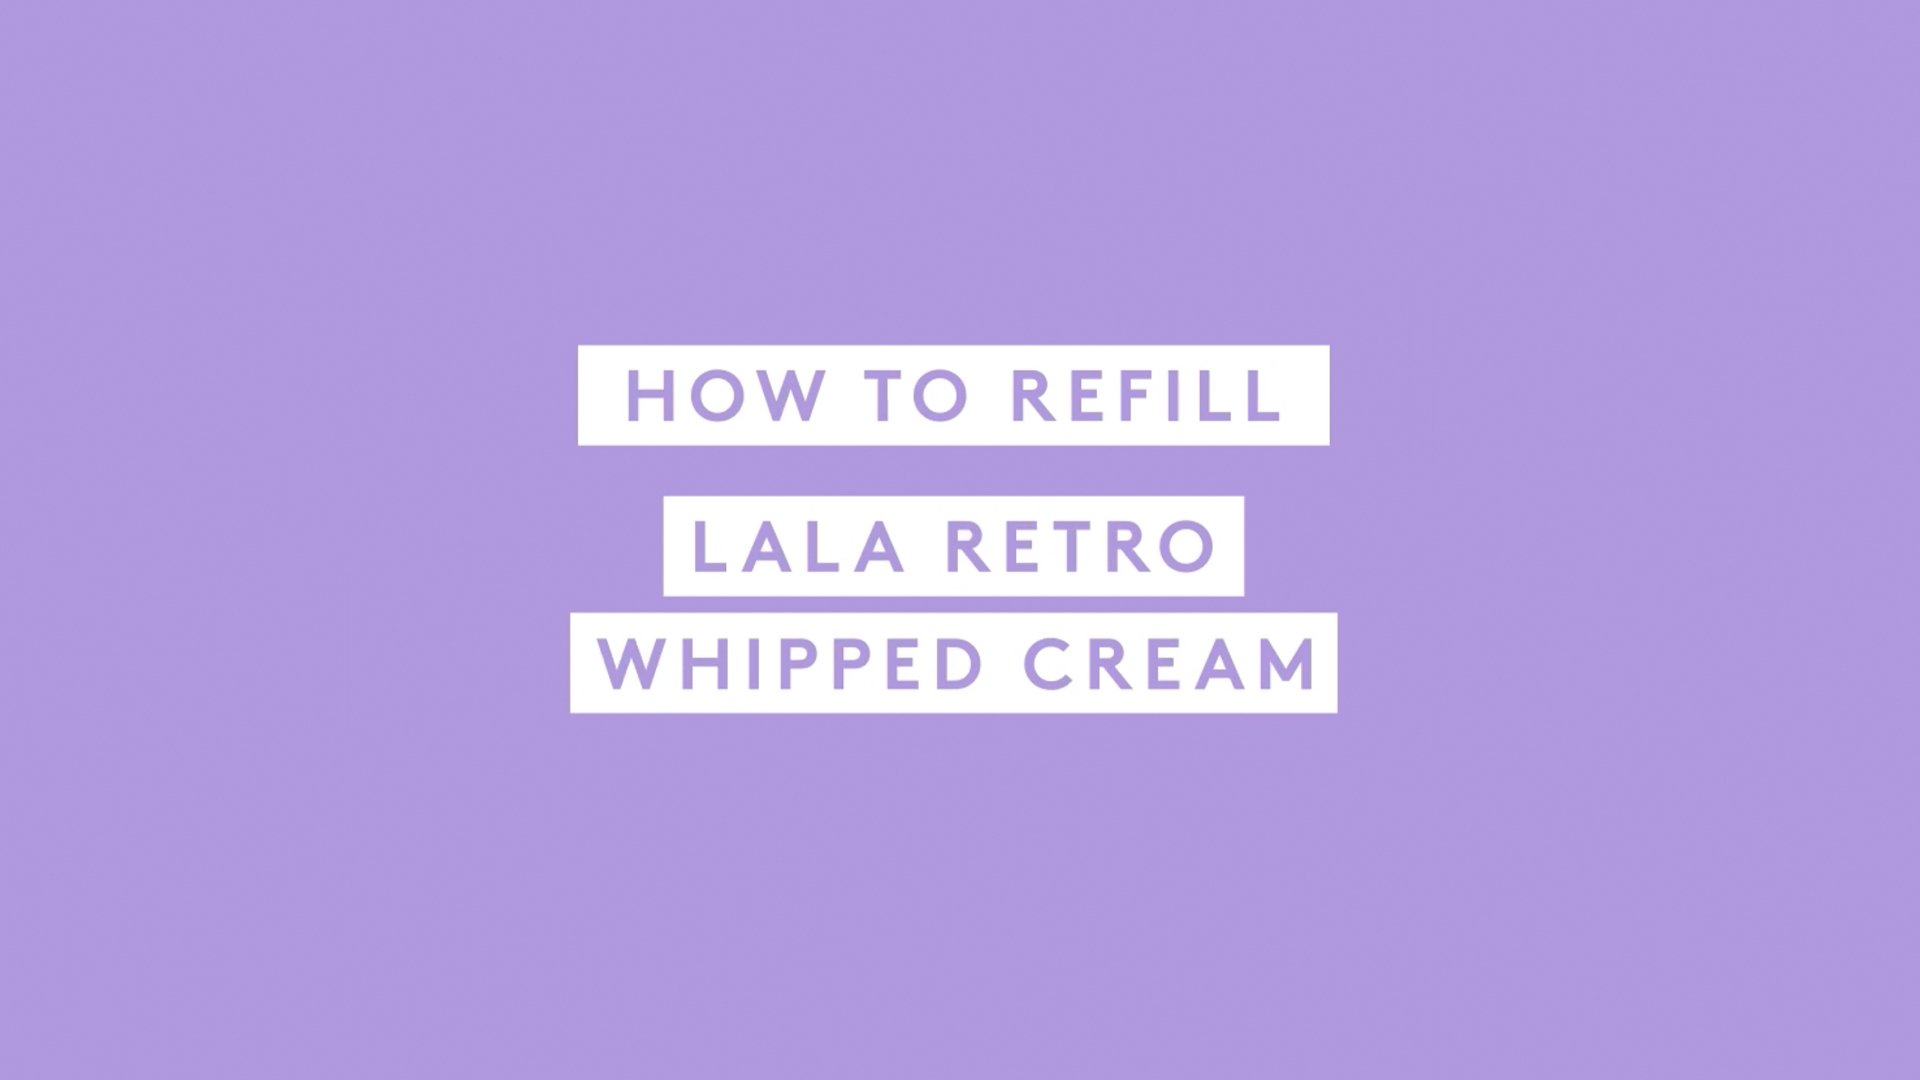  Video describing how to use Lala refill